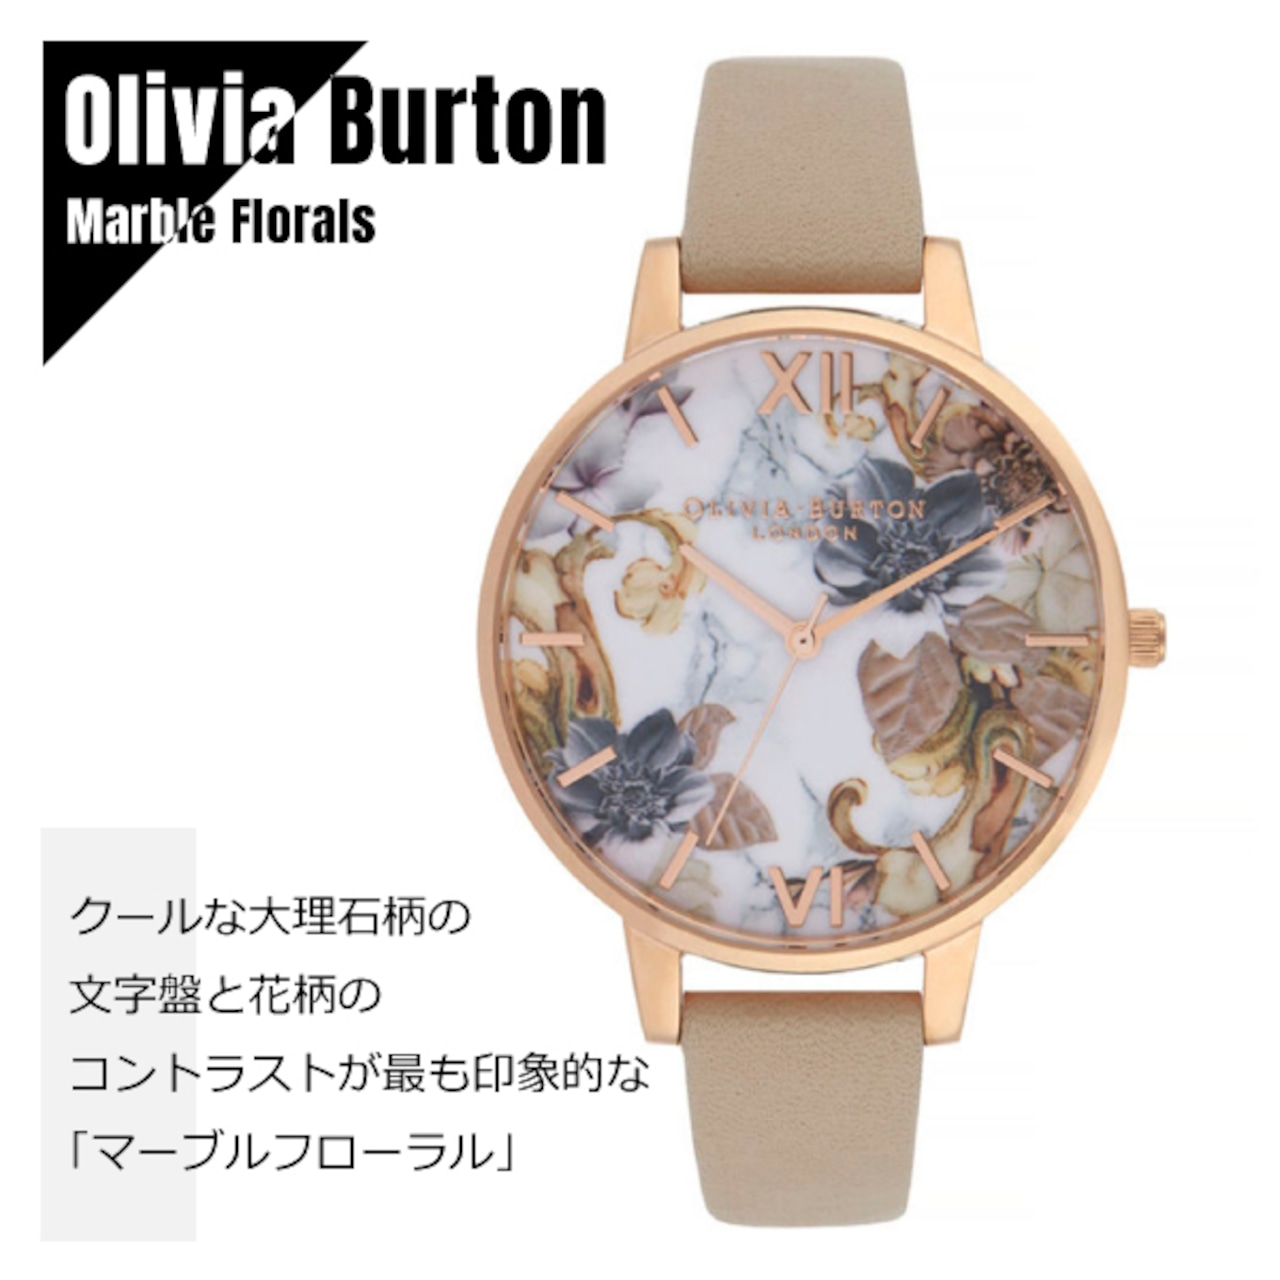 OLIVIA BURTON オリビアバートン 大理石柄 フローラル OB16CS17 マーブル×グレージュ レザー 腕時計 レディース